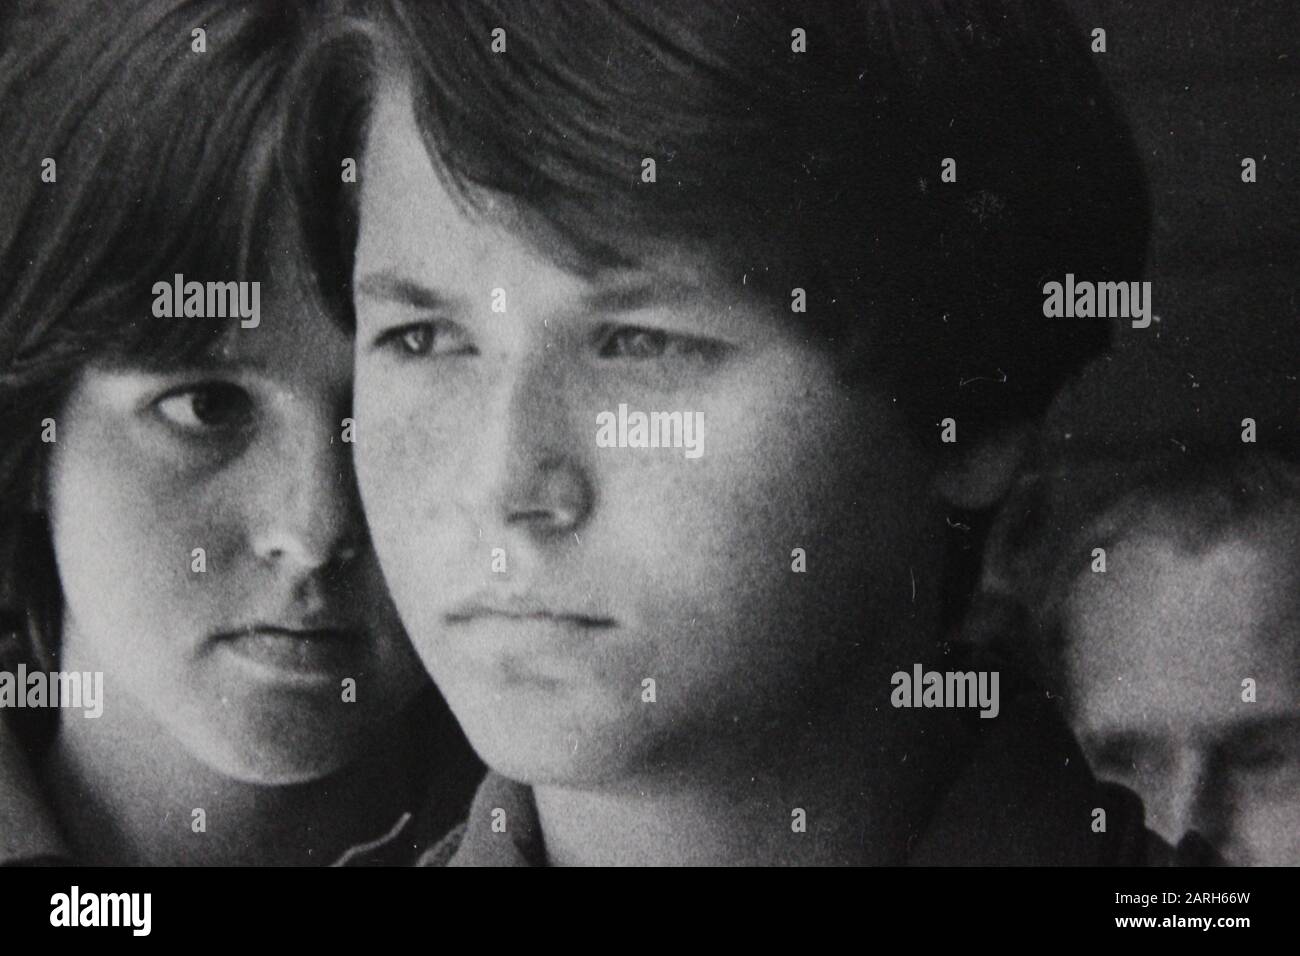 Fine photographie d'époque noir et blanc des années 1970 d'un adolescent chuchotant à un autre adolescent suspect Banque D'Images